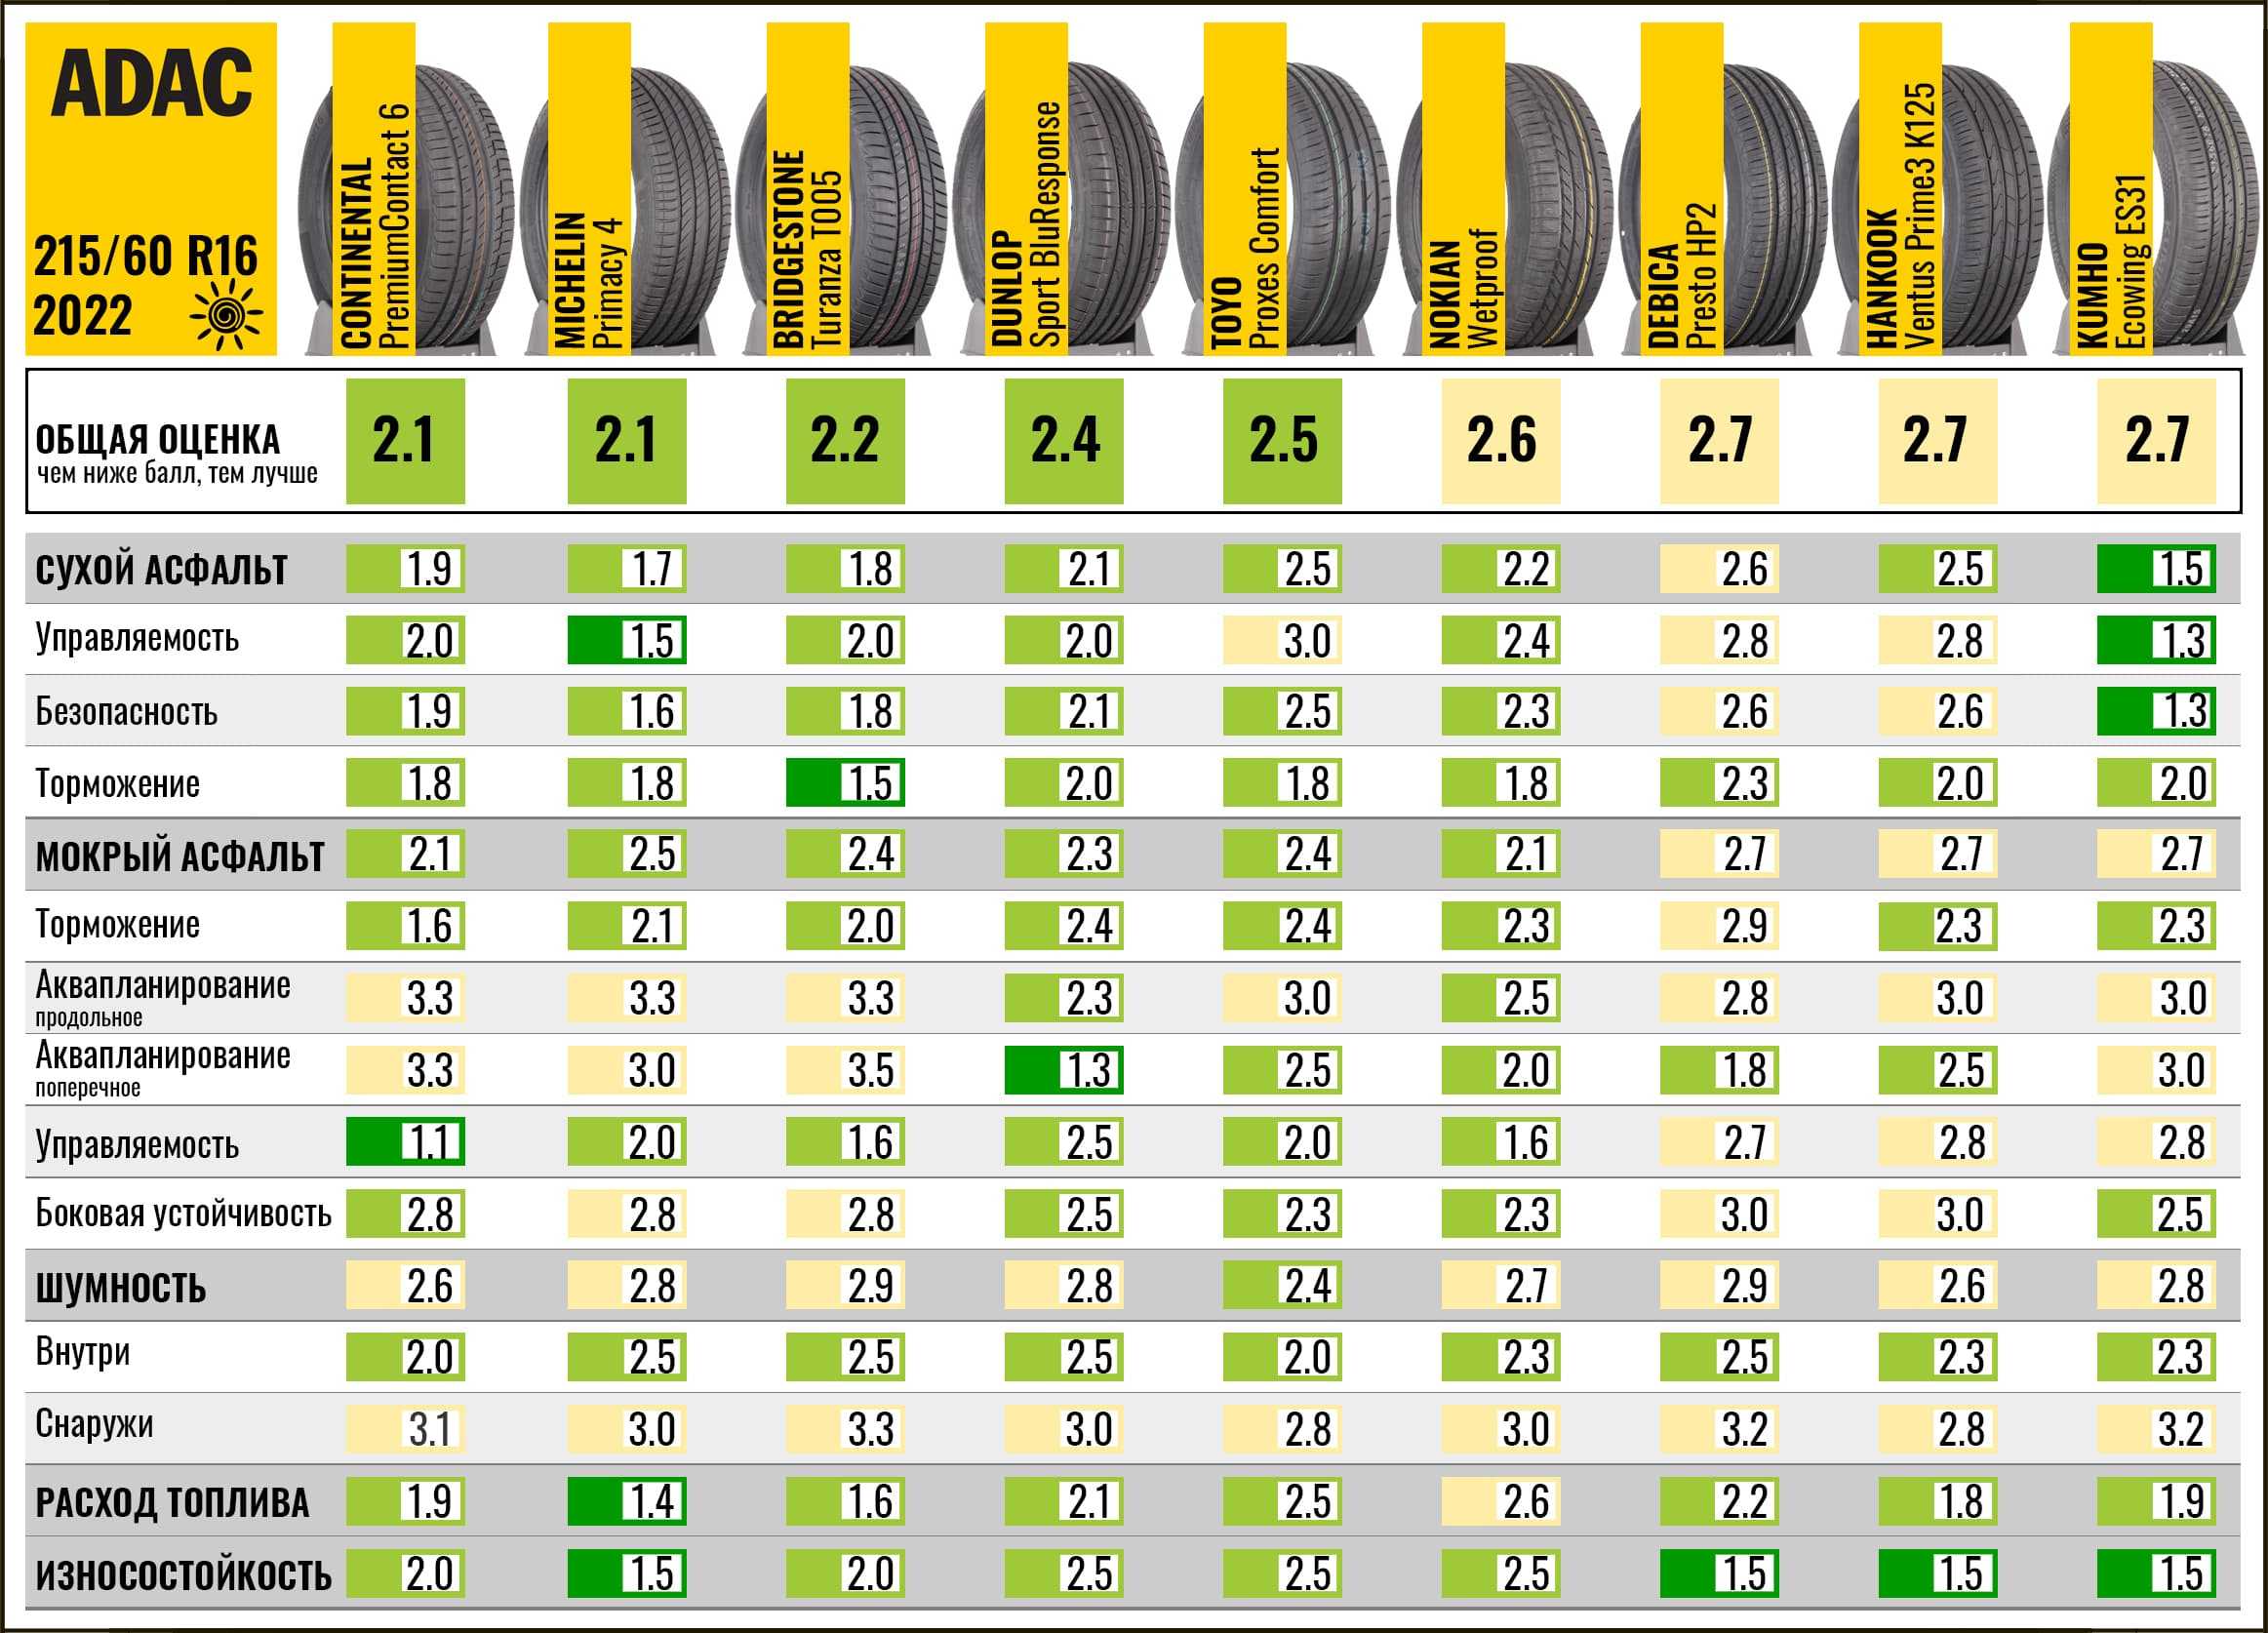 Рейтинг лучшие шины для кроссоверов. Топ летних шин 2022 r16 для легковых автомобилей. Лучшие летние шины r17 для кроссоверов 2022. Заменяемость автошин 215 65 r16. Тест шин ADAC 2023.